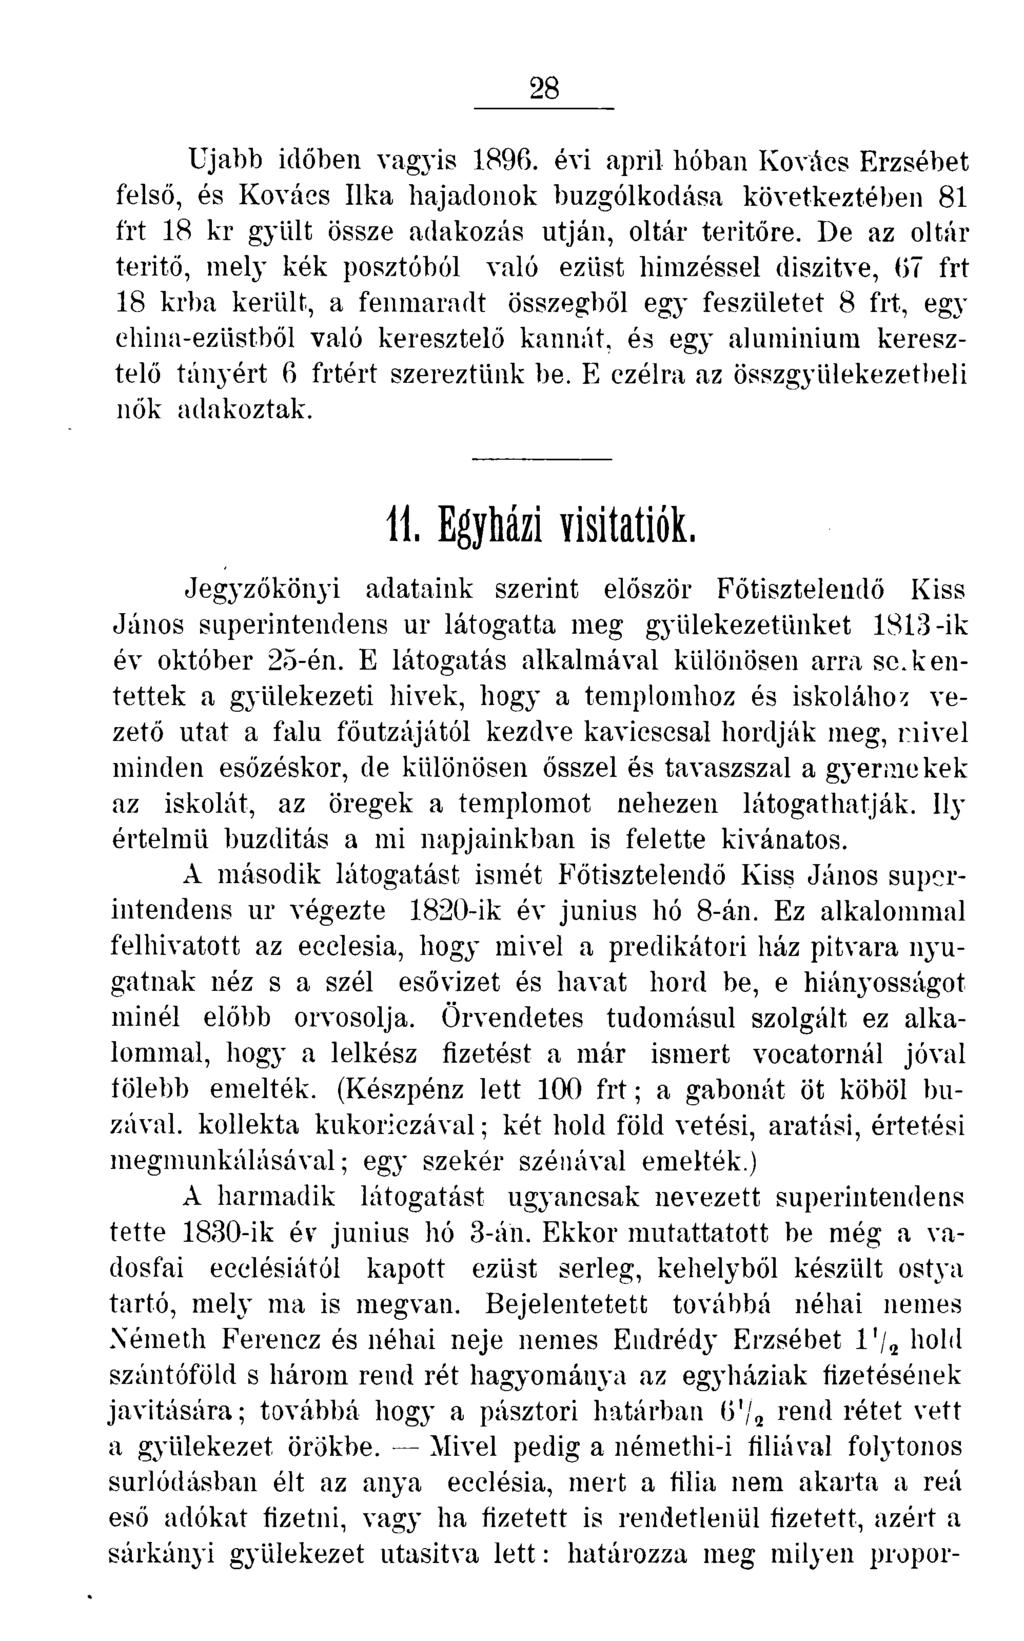 28 Ujabb időben vagyis 1896. évi april hóban Kovács Erzsébet felső, és Kovács Ilka hajadonok buzgólkodása következtében 81 frt 18 kr gyiilt össze adakozás utján, oltár teritőre.